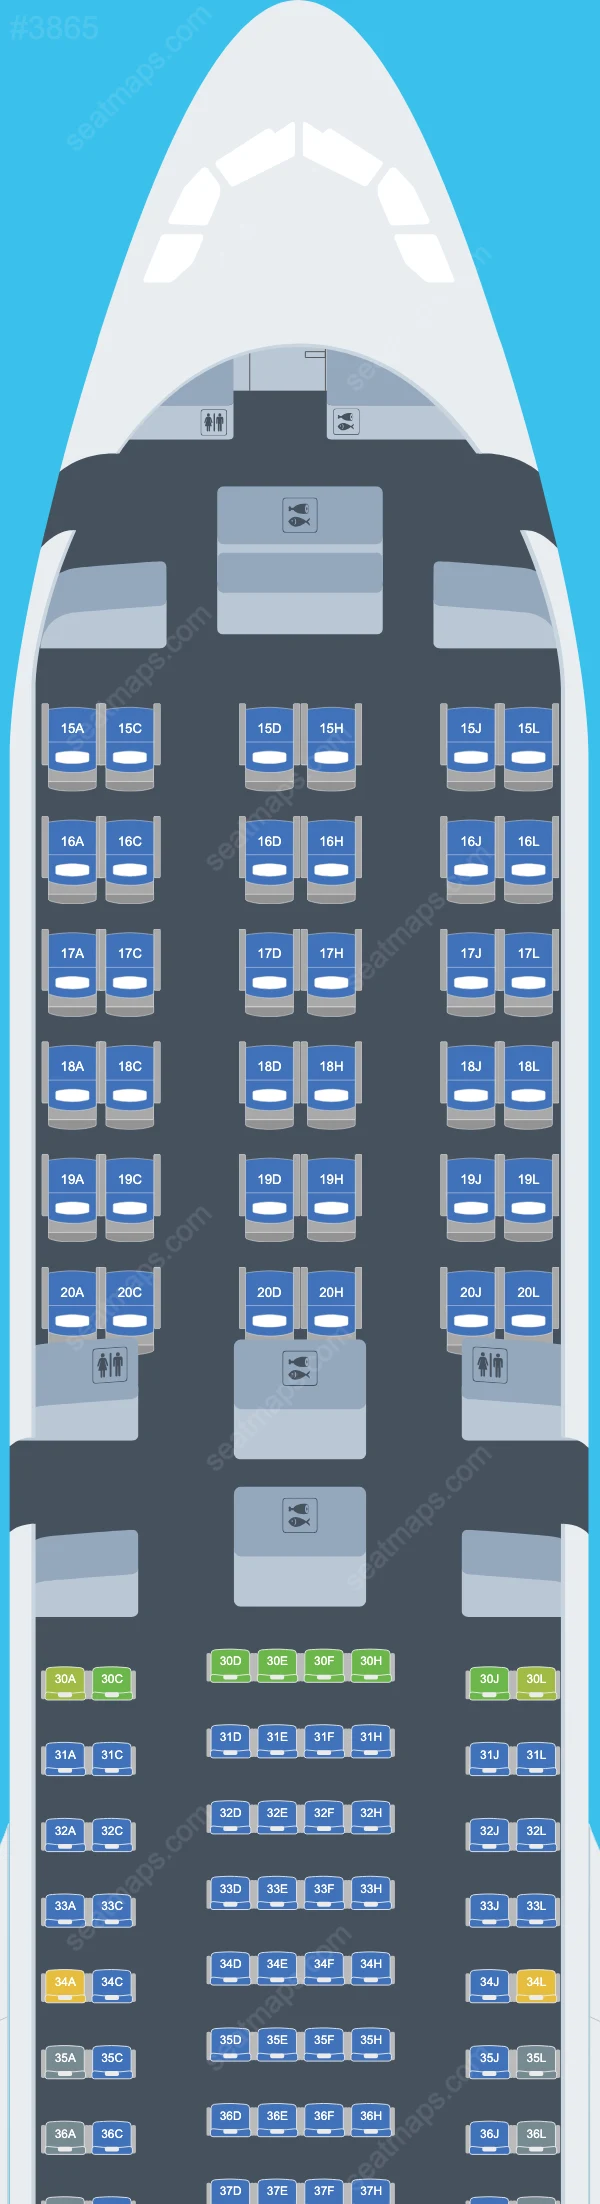 Saudia Airbus A330 Plan de Salle A330-300 V.2